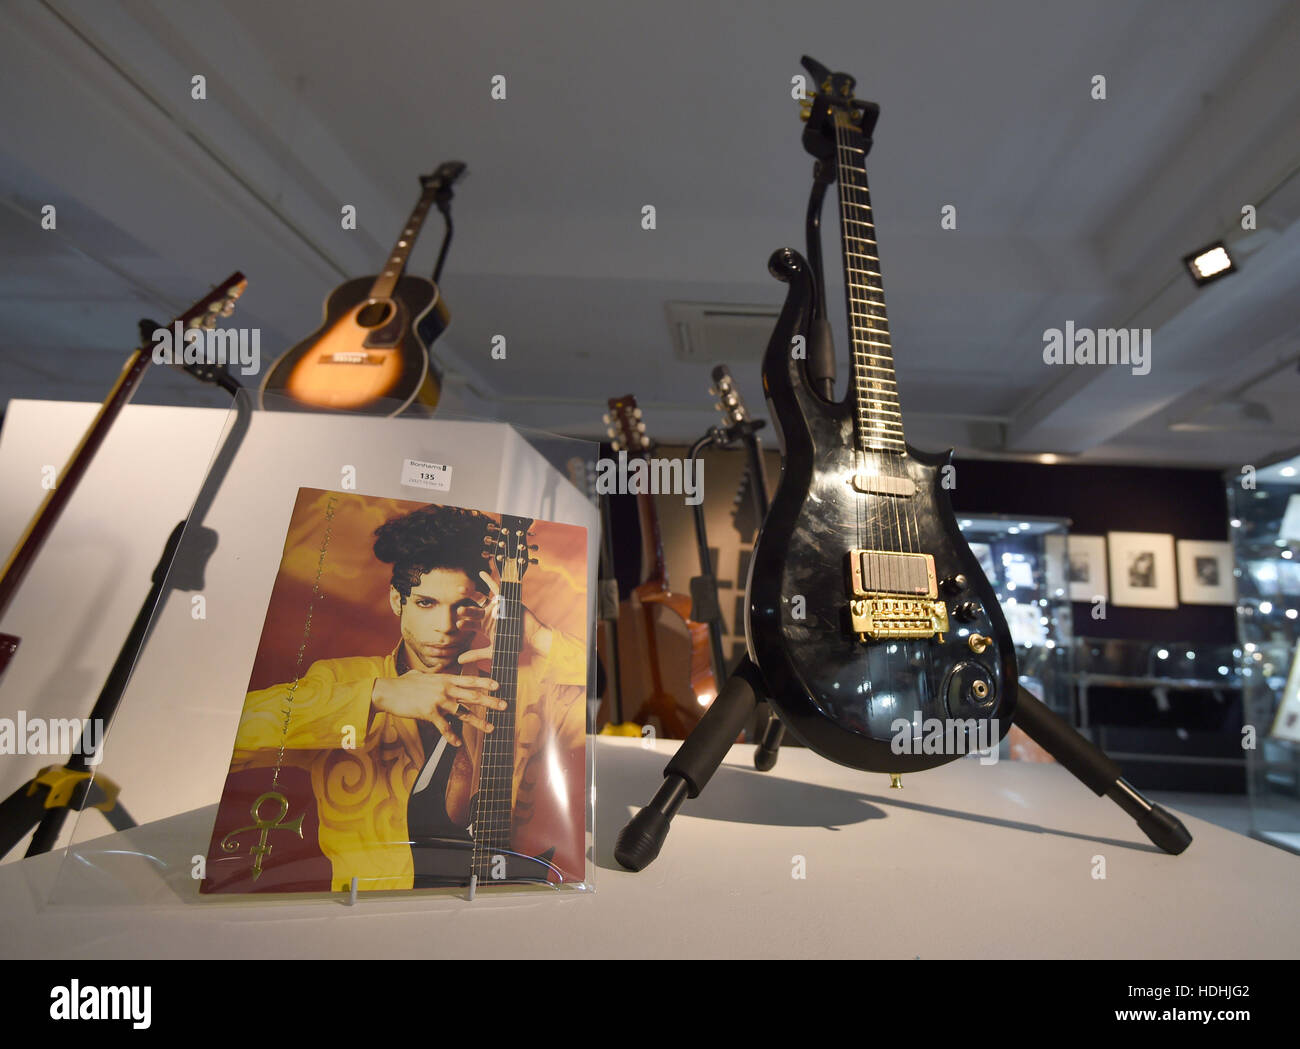 Una chitarra di proprietà dal Principe (anteriore destro) e una chitarra di proprietà di Jimi Hendrix (posteriore sinistra) sul display davanti al la memorabilia di intrattenimento Vendita a Bonhams a Knightsbridge, Londra questa settimana. Foto Stock